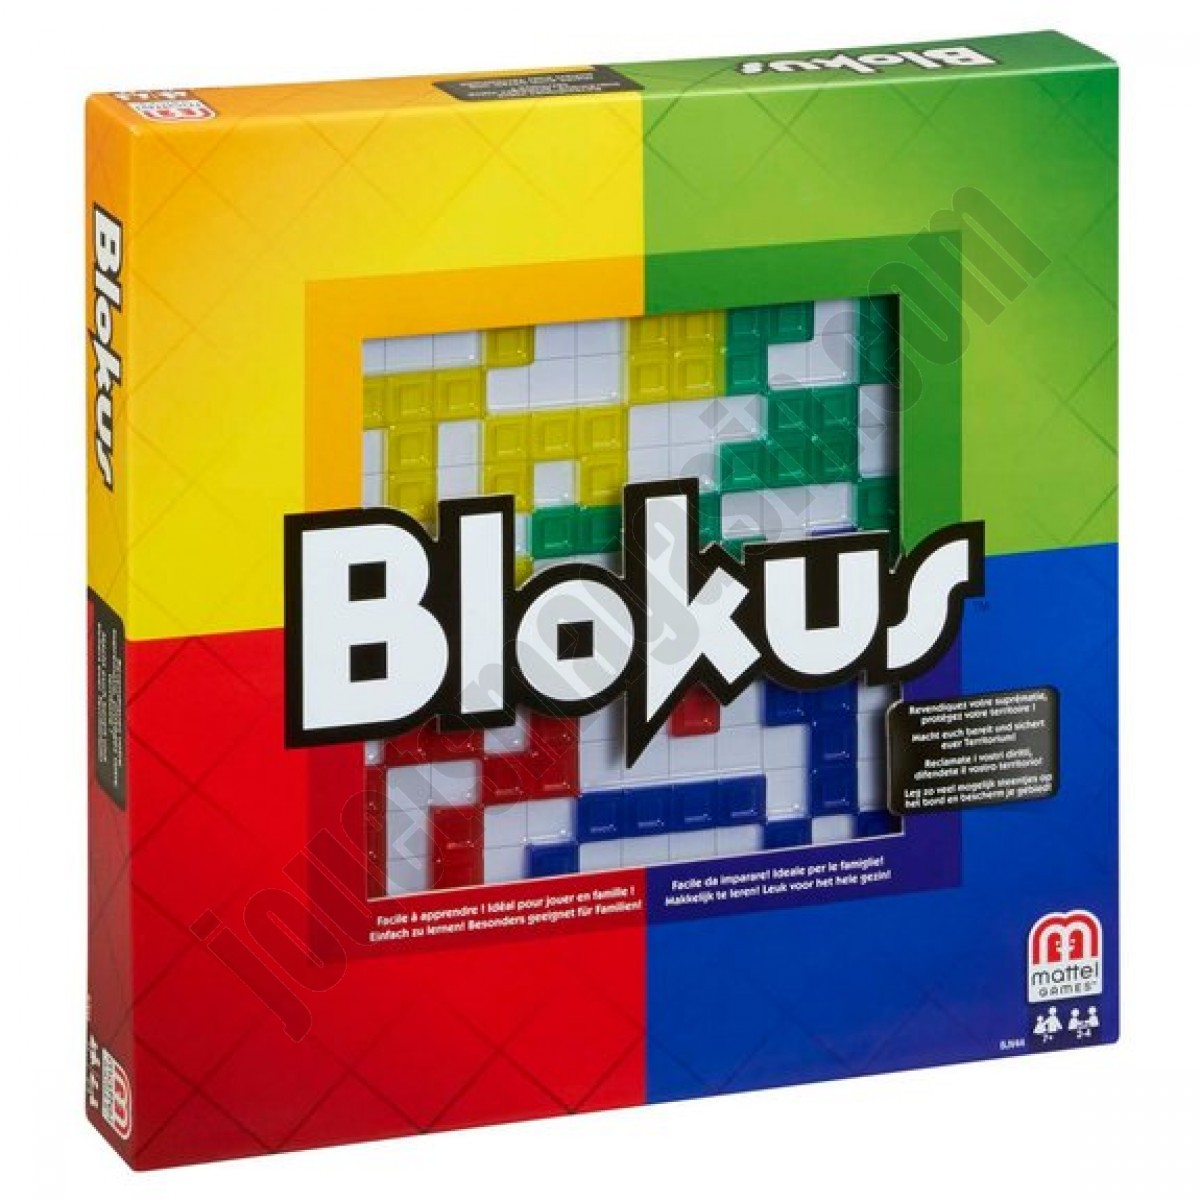 Blokus En promotion - Blokus En promotion